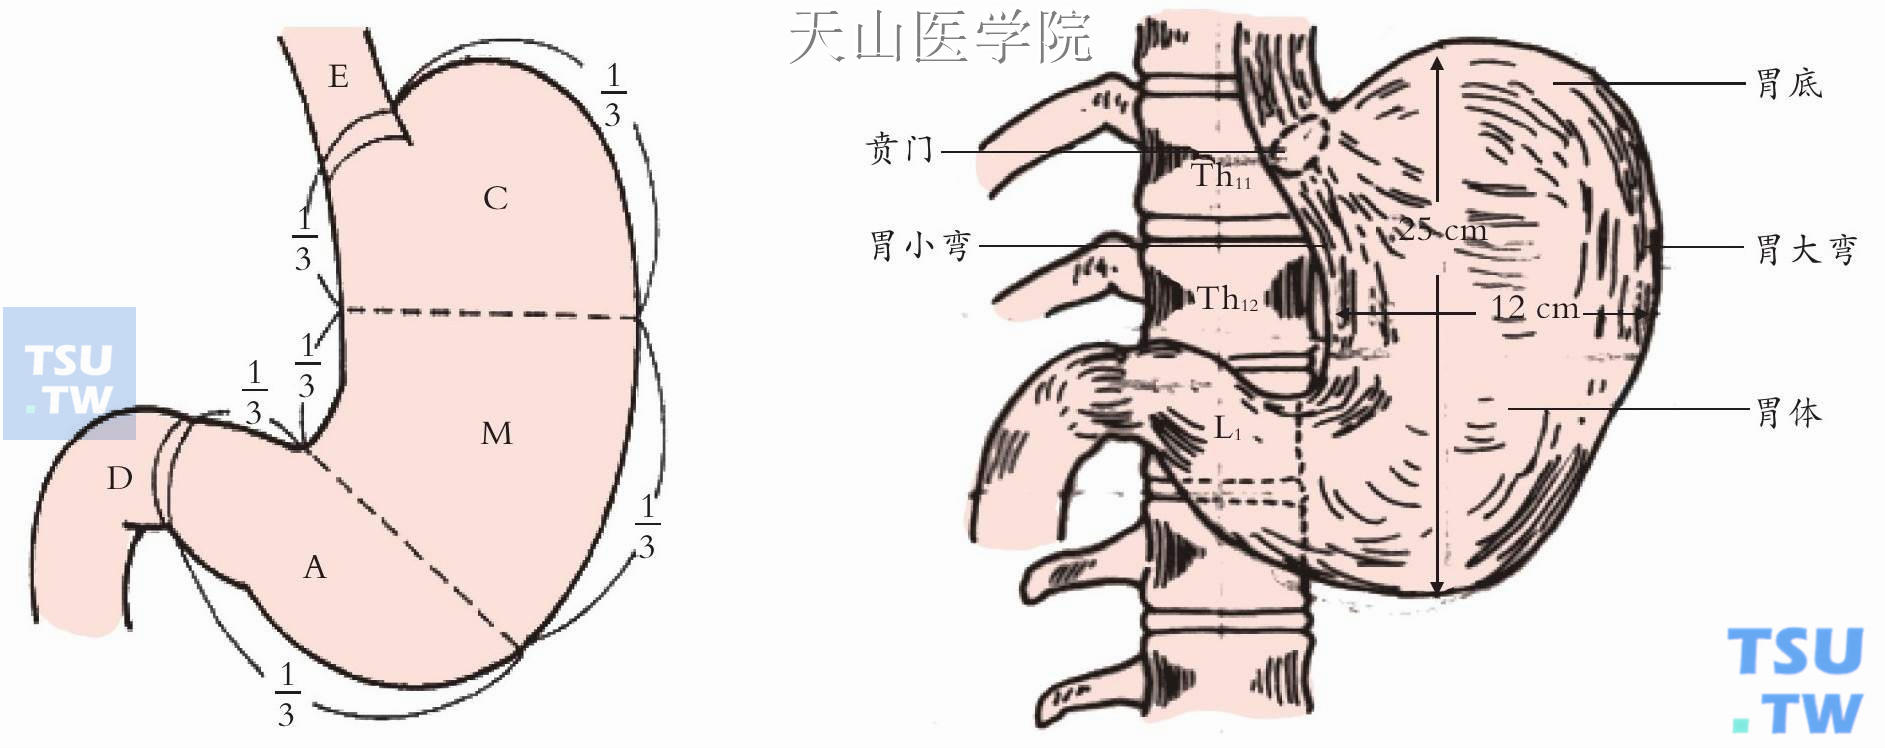 胃的解剖（C：上部；M：中部；A：下部）